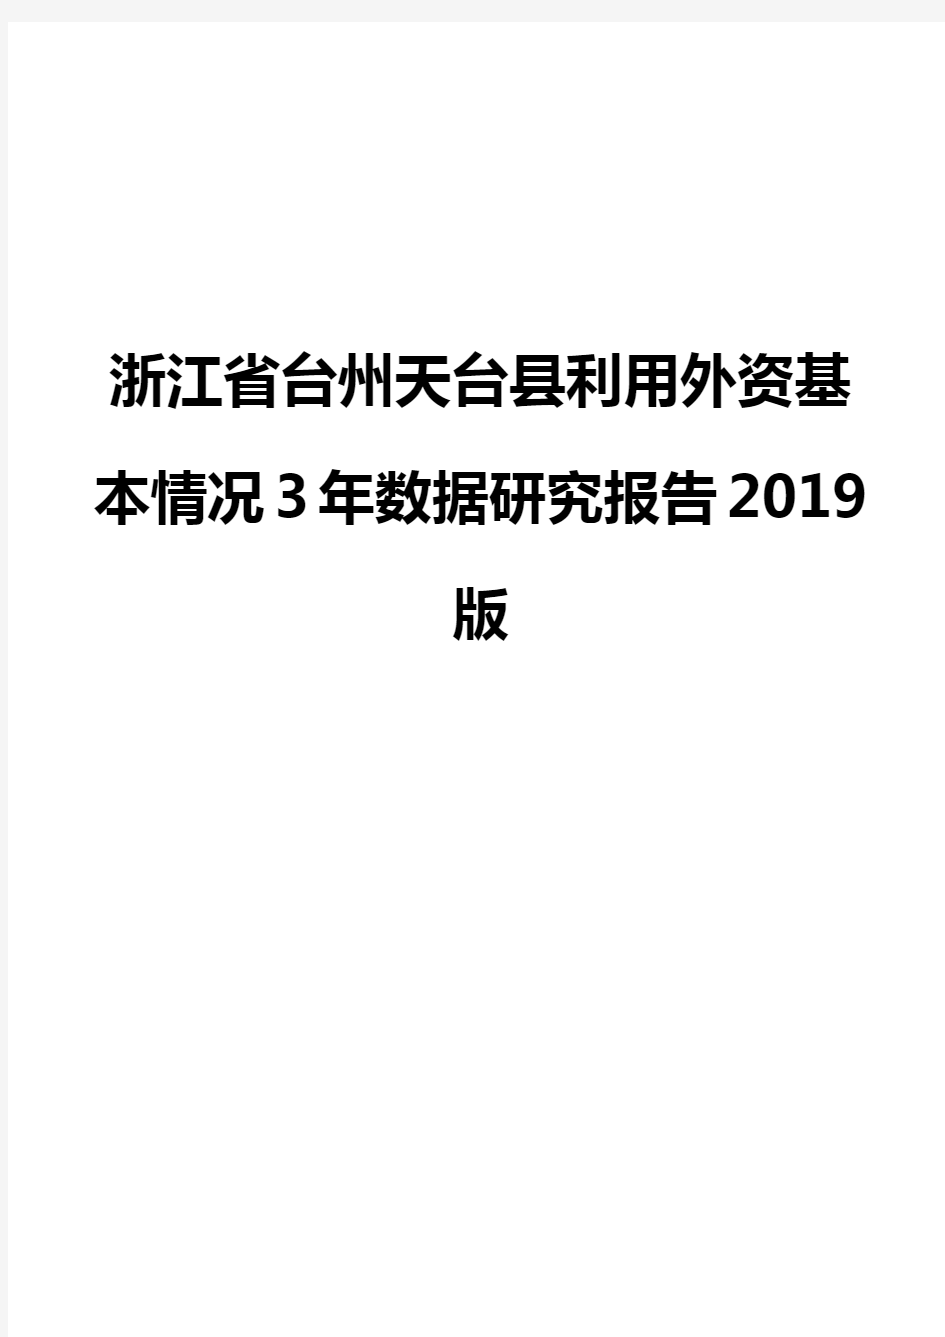 浙江省台州天台县利用外资基本情况3年数据研究报告2019版